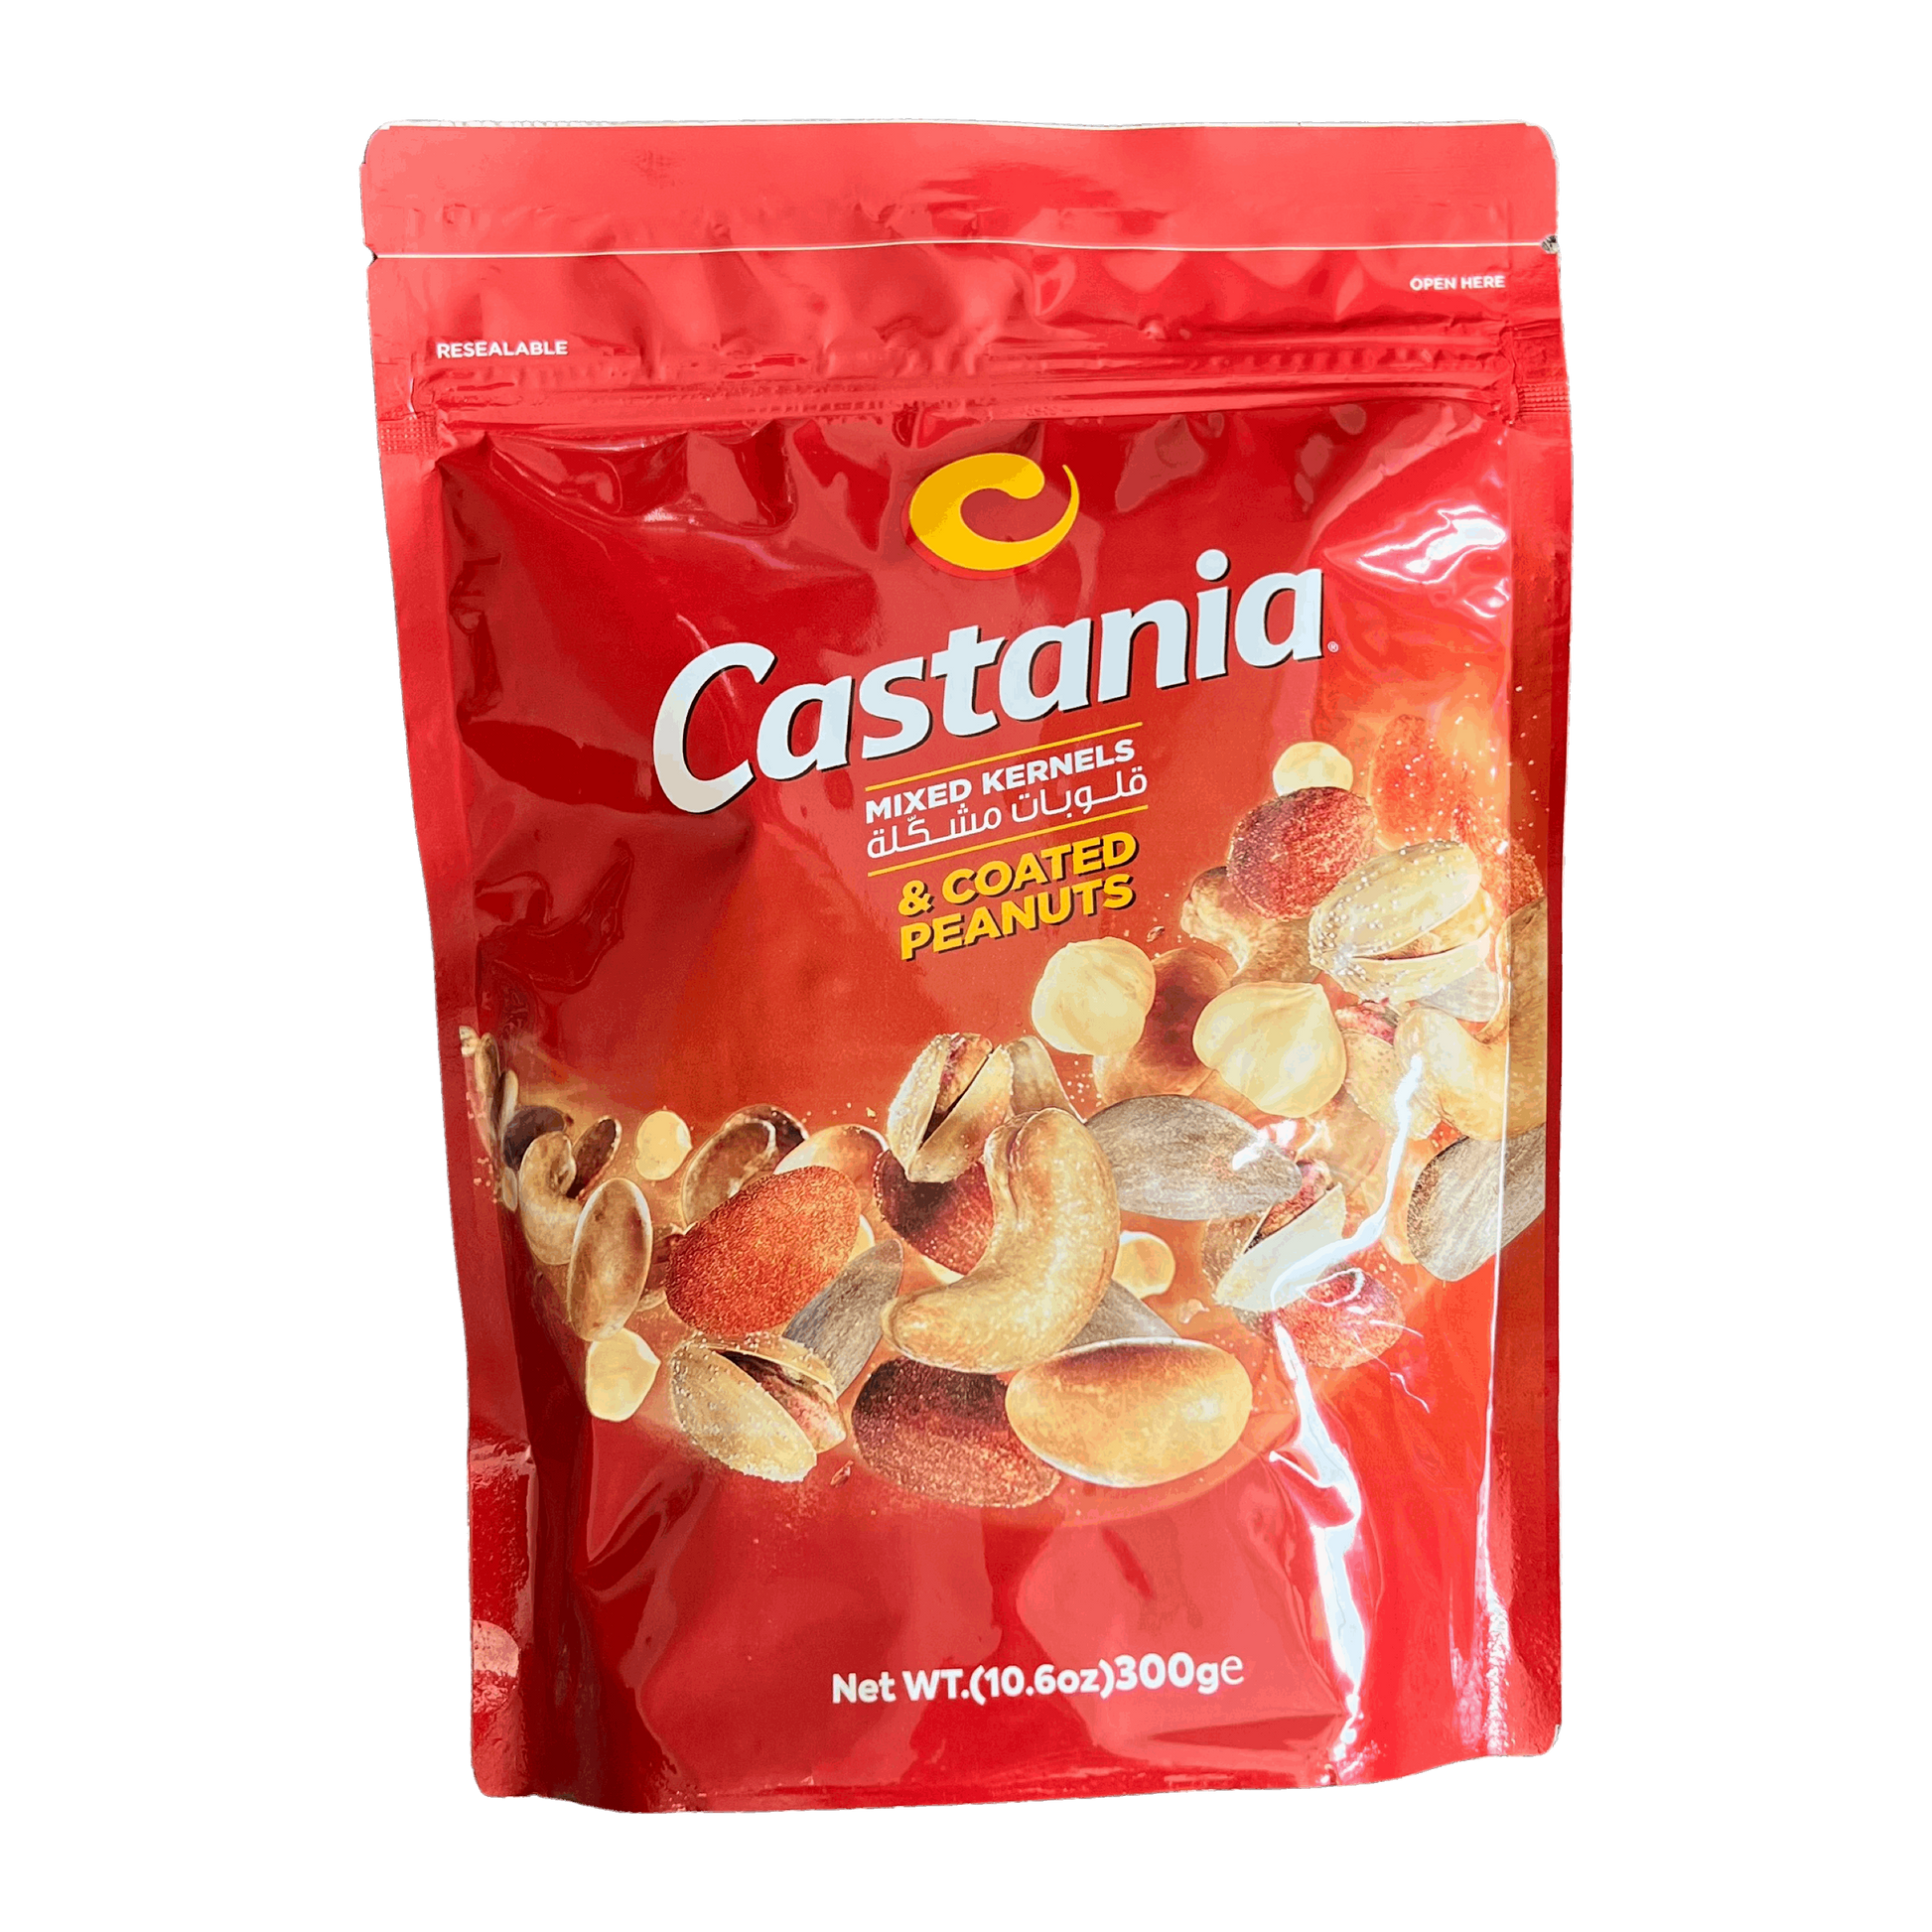 Castania Mixed Kernels & Coated Peanuts 300g Damaski